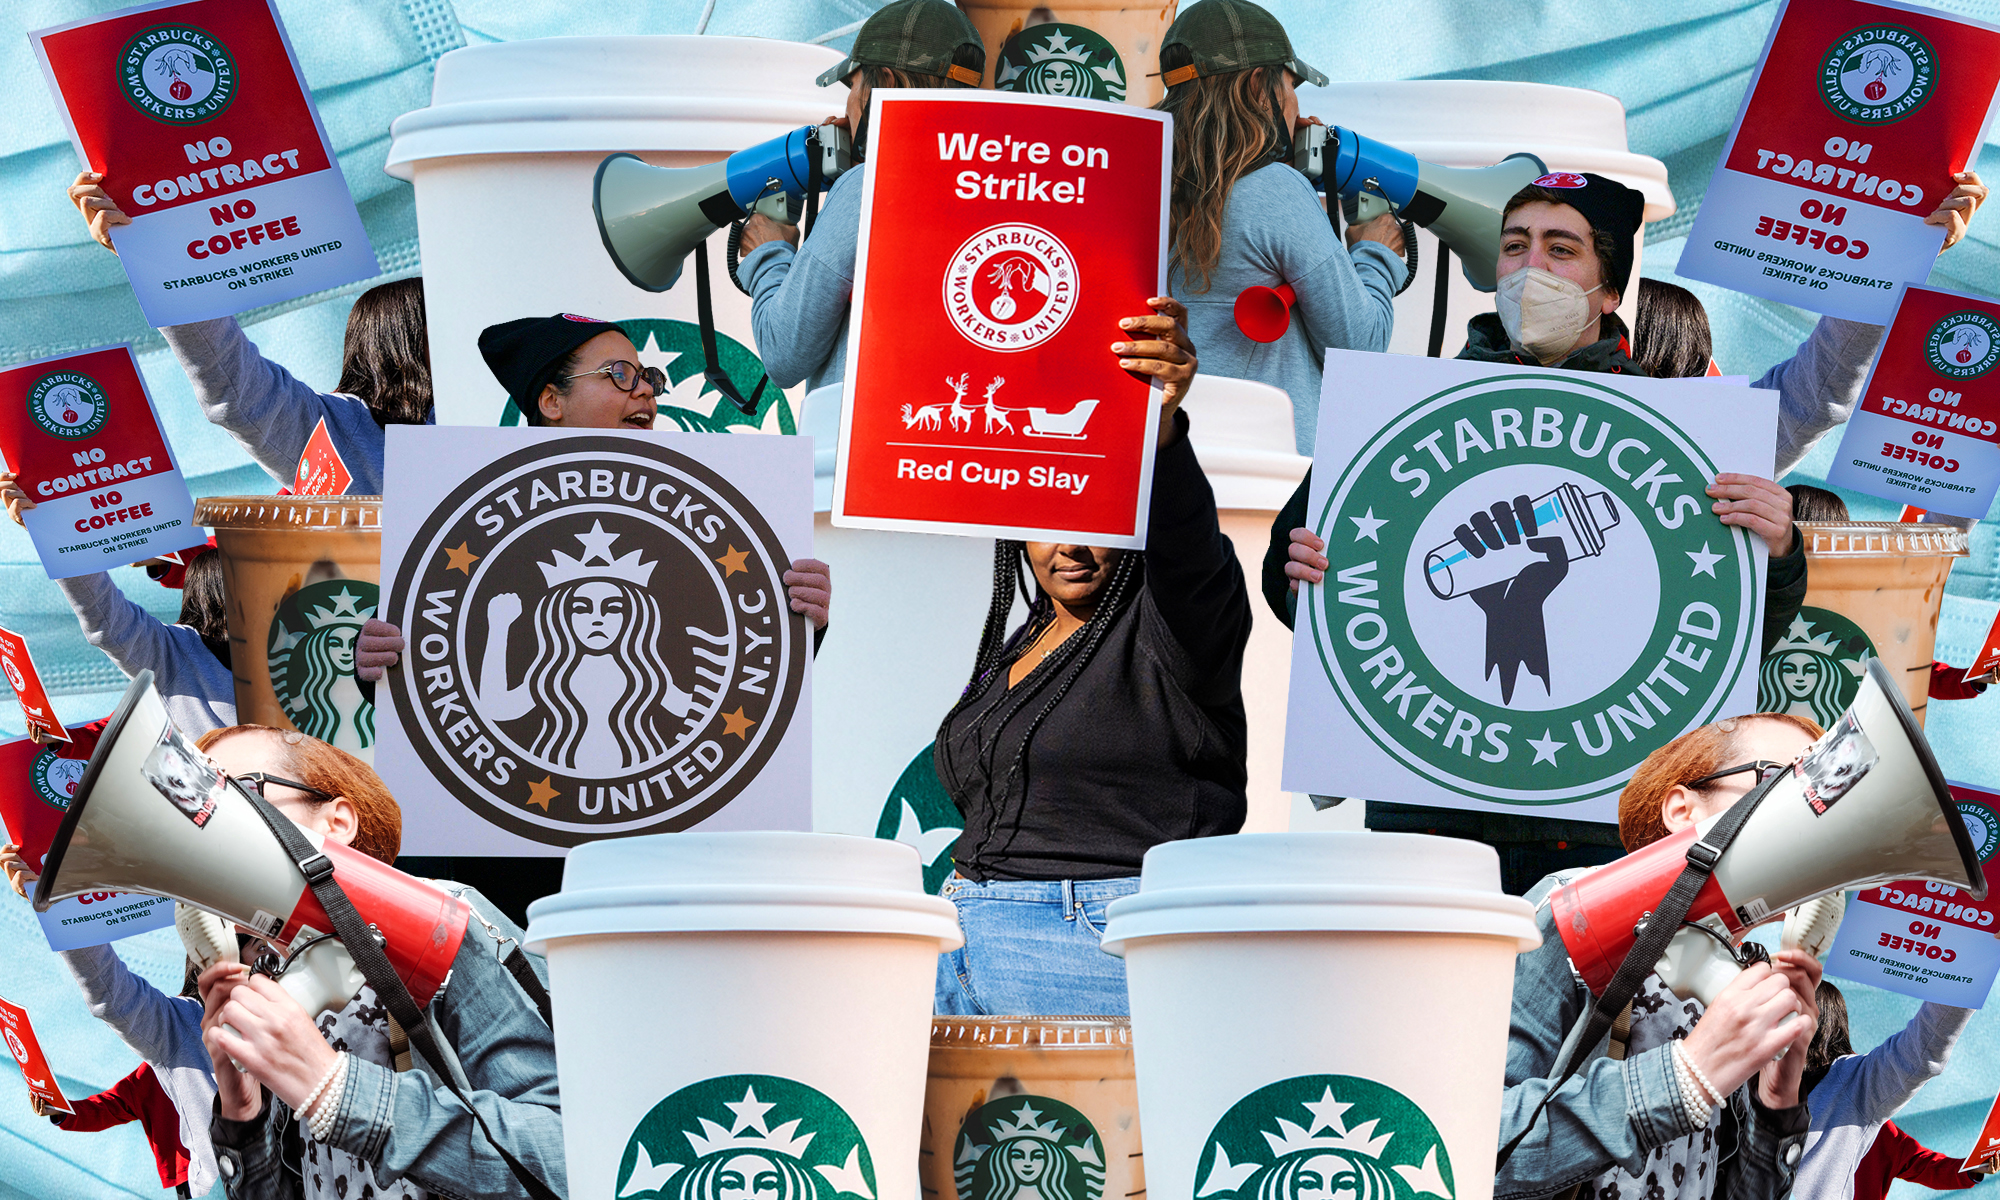 人们举着写有“星巴克工人团结”的标语，人们对着扩音器说话，还有一次性星巴克咖啡杯的照片拼贴。